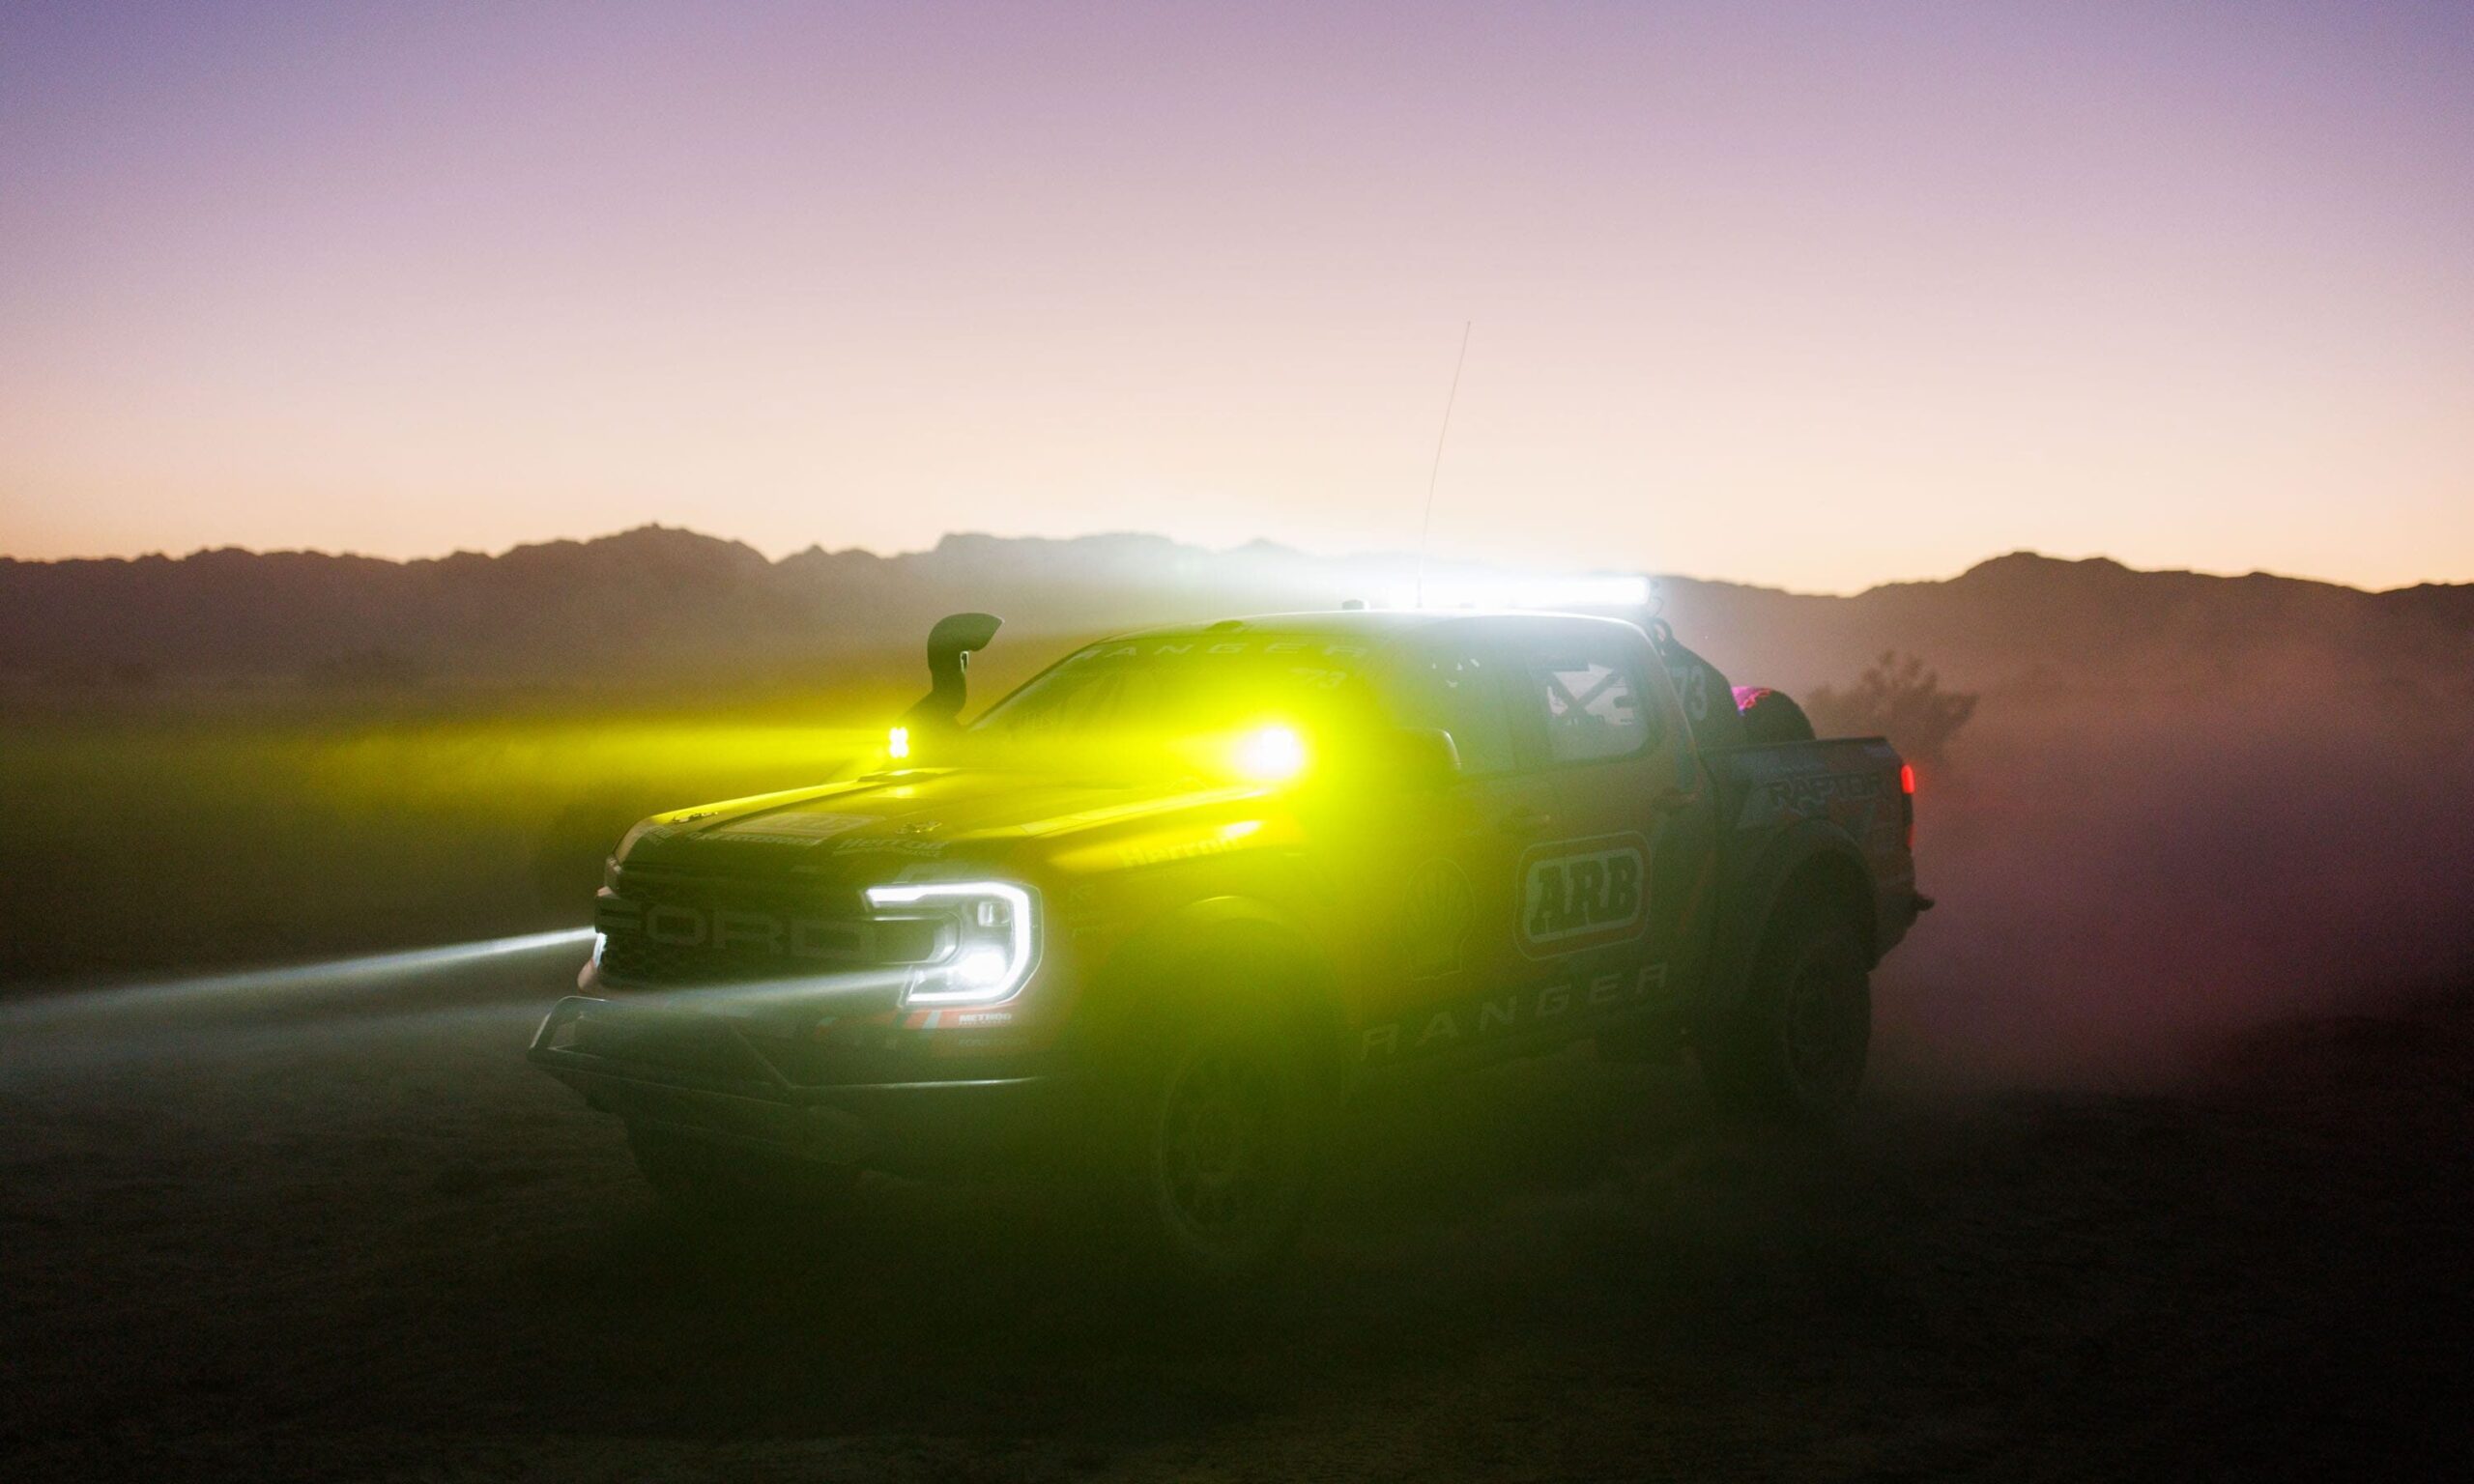 Ford Ranger Raptor Baja racer at night in dust